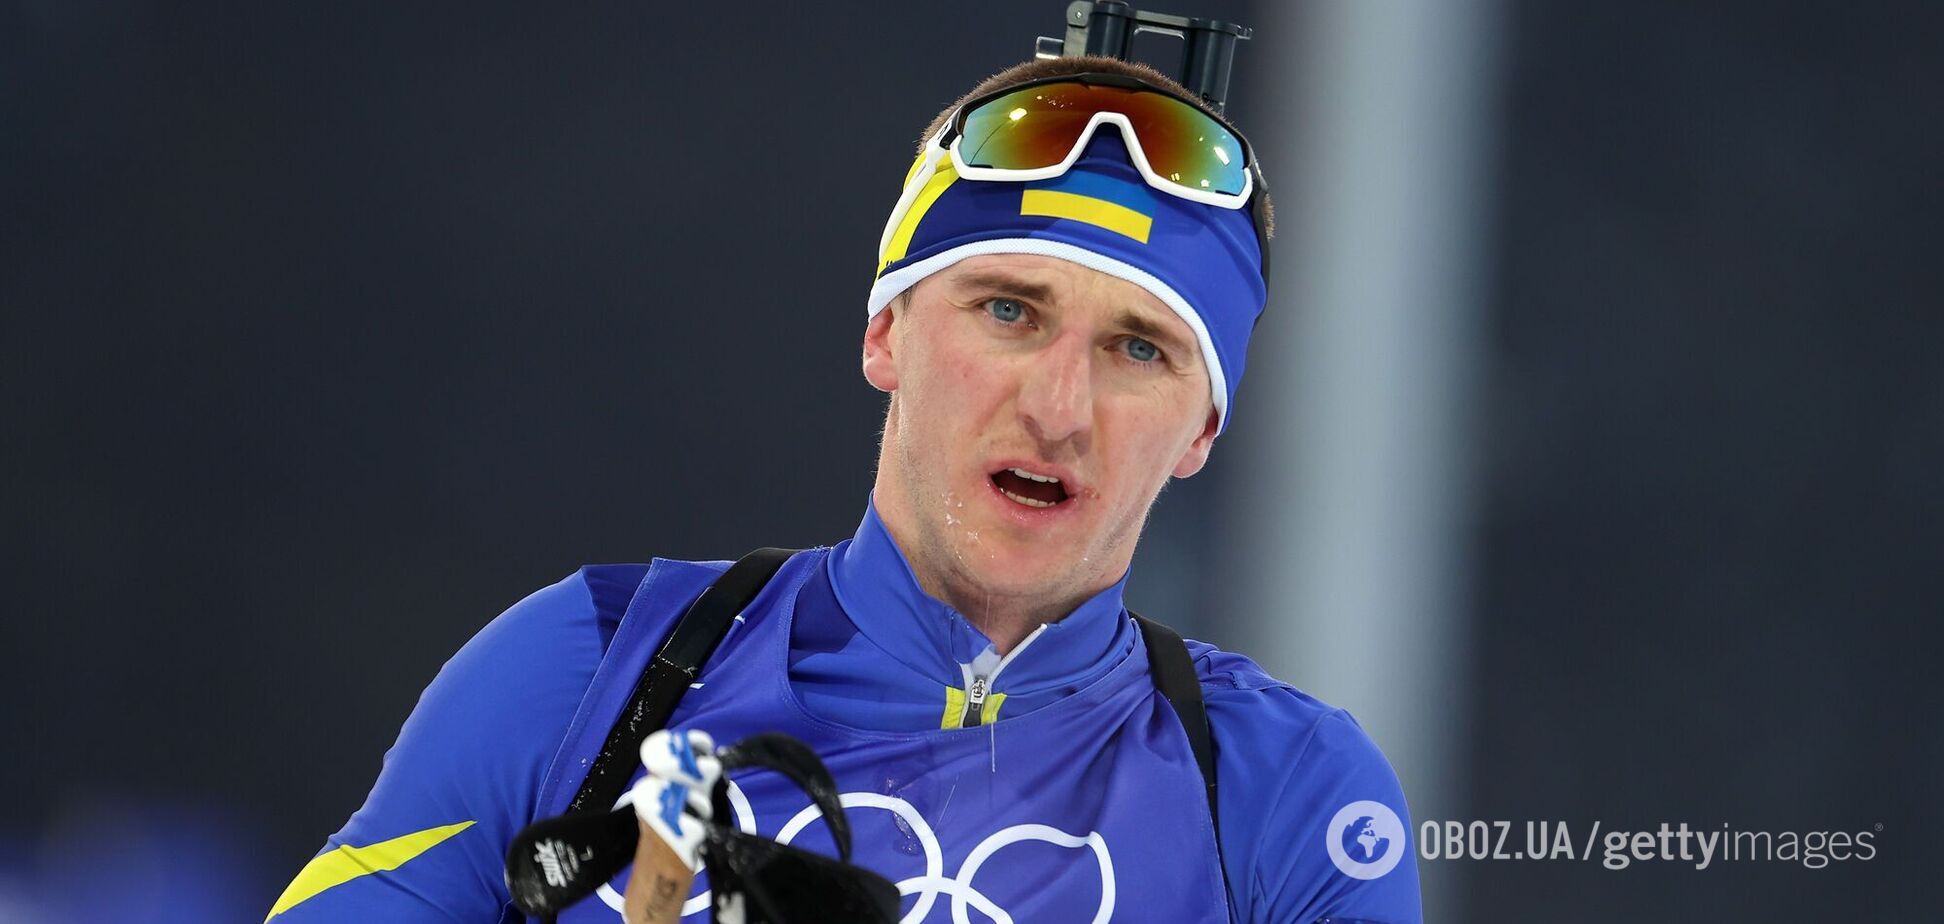 Украинский биатлонист на Олимпиаде отметился благородным поступком